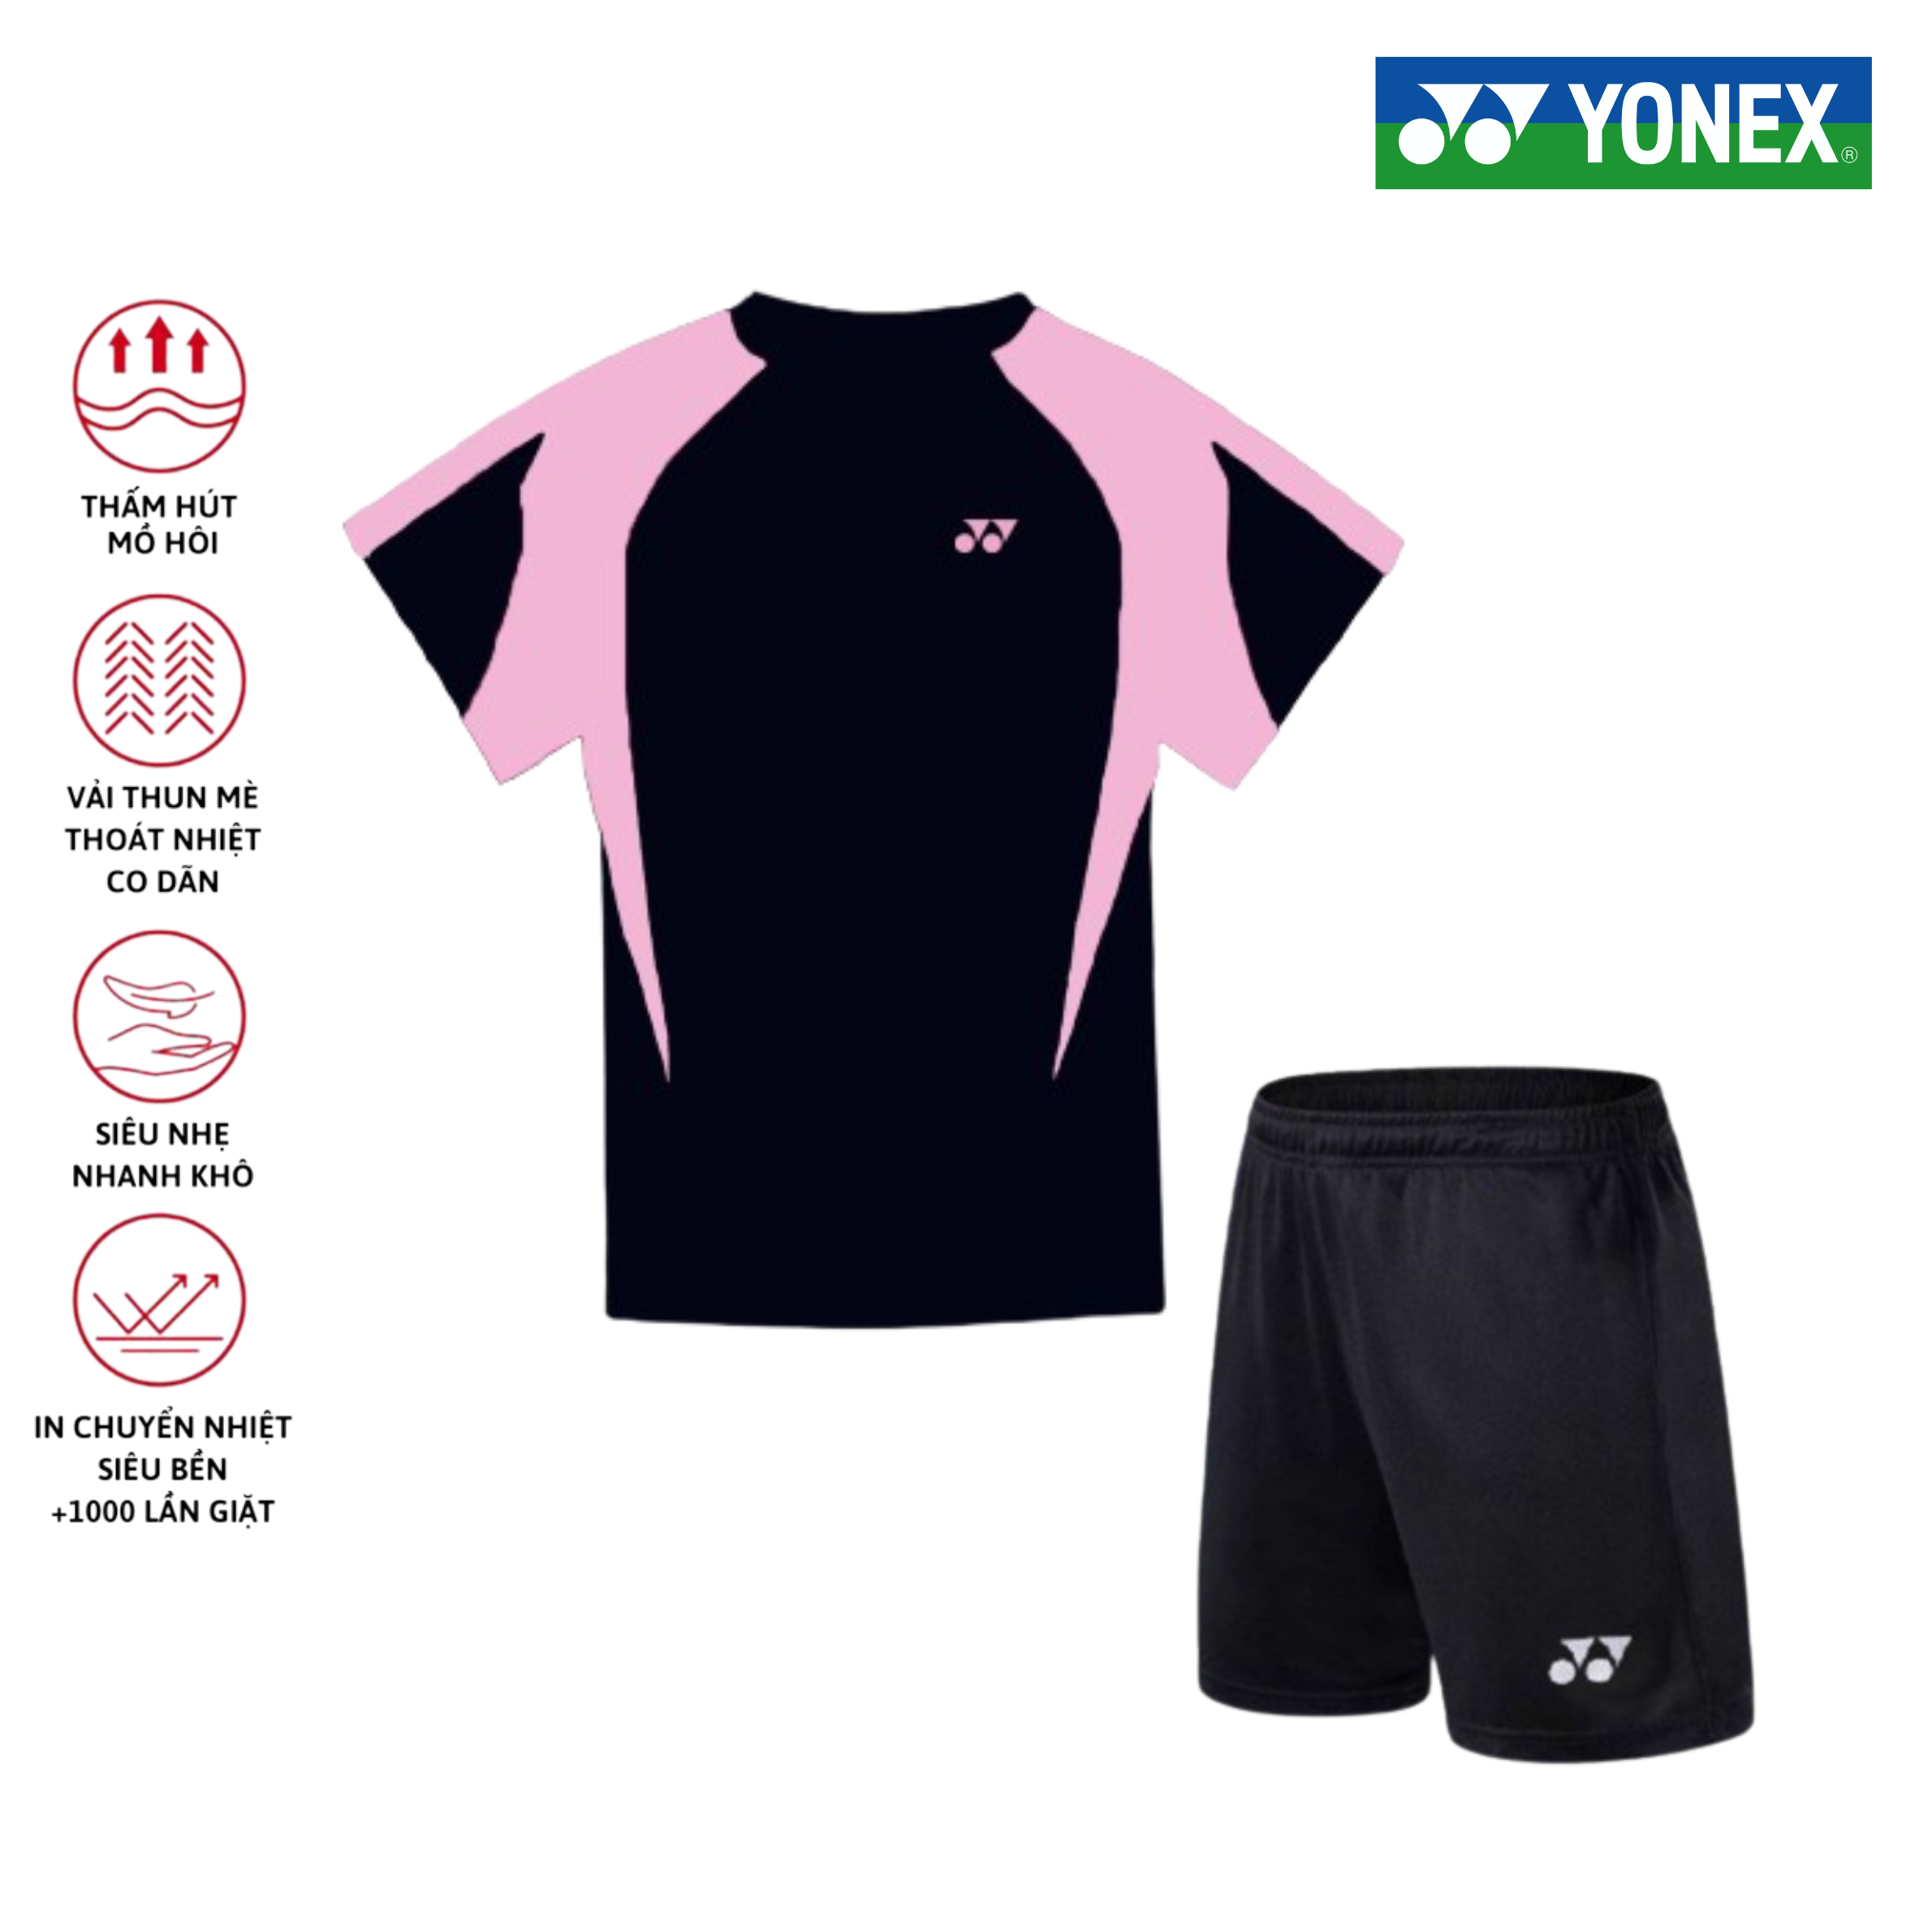 Áo cầu lông, quần cầu lông Yonex chuyên nghiệp mới nhất sử dụng tập luyện và thi đấu cầu lông A503